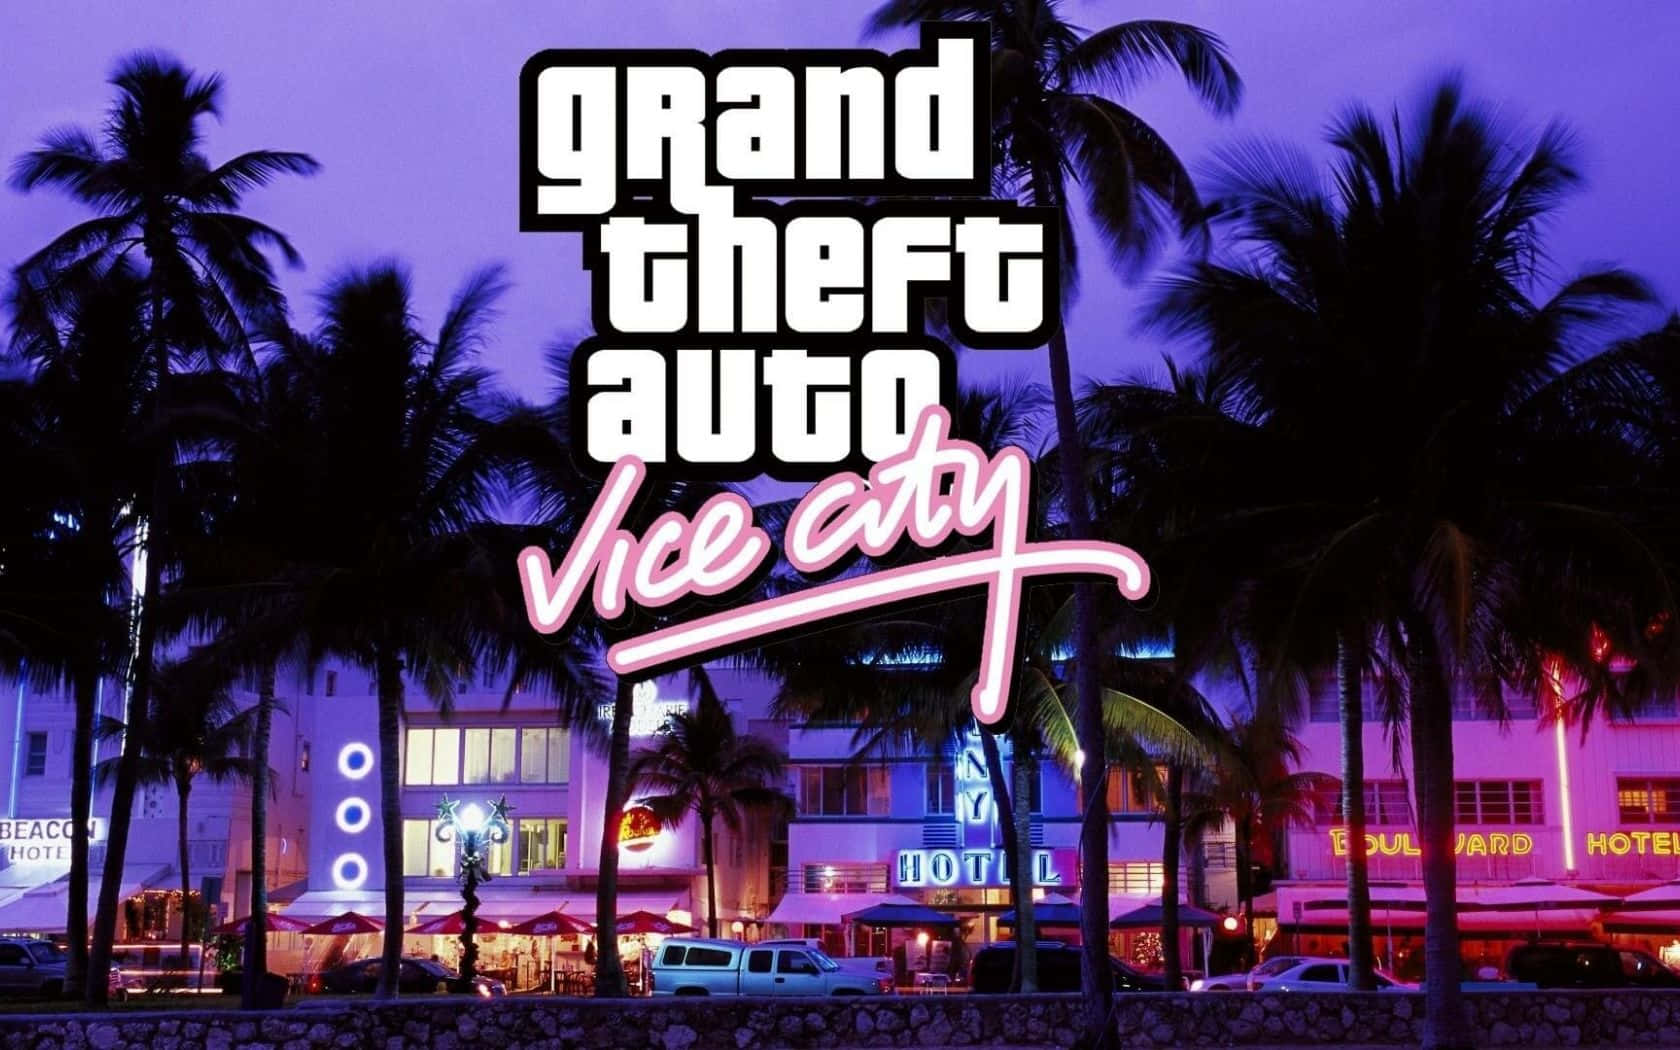 Erlebensie Das Aufregende Leben Des Verbrechens In Grand Theft Auto Vice City Wallpaper